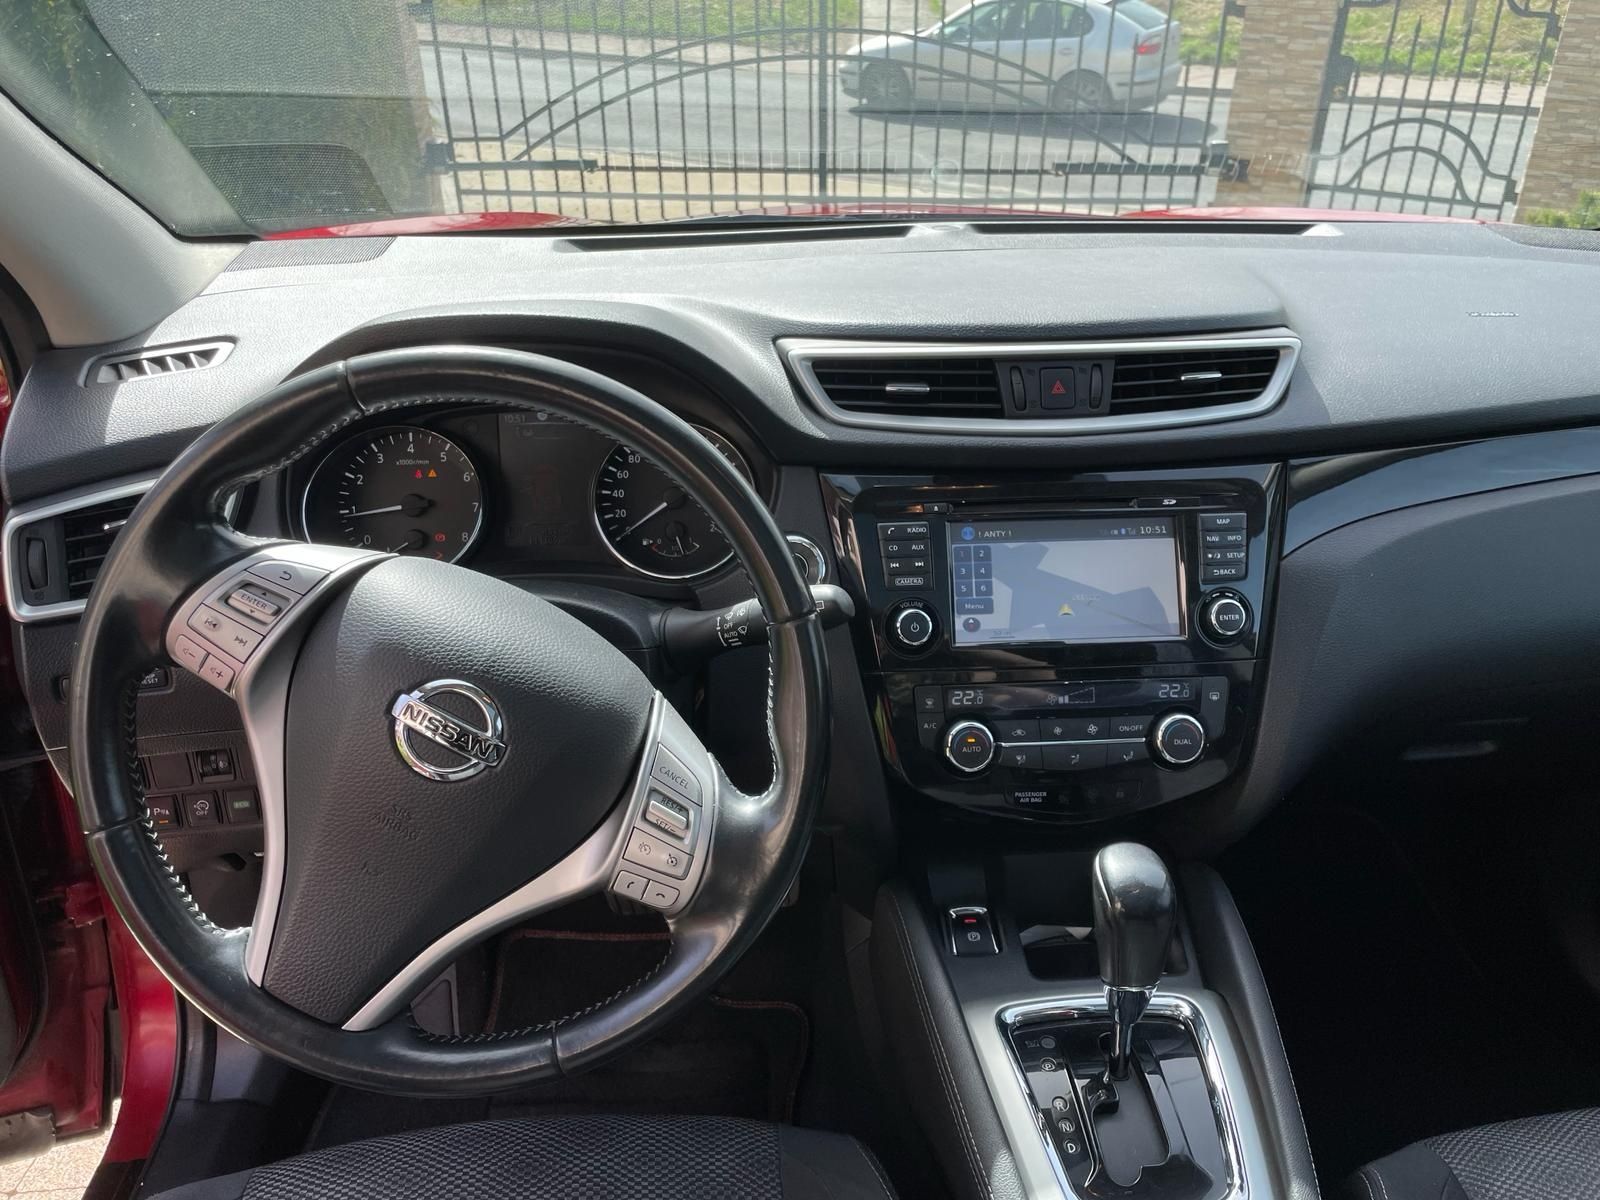 Nissan Qashqai II 2015 zarejestrowany, automat, panorama, nawigacja,